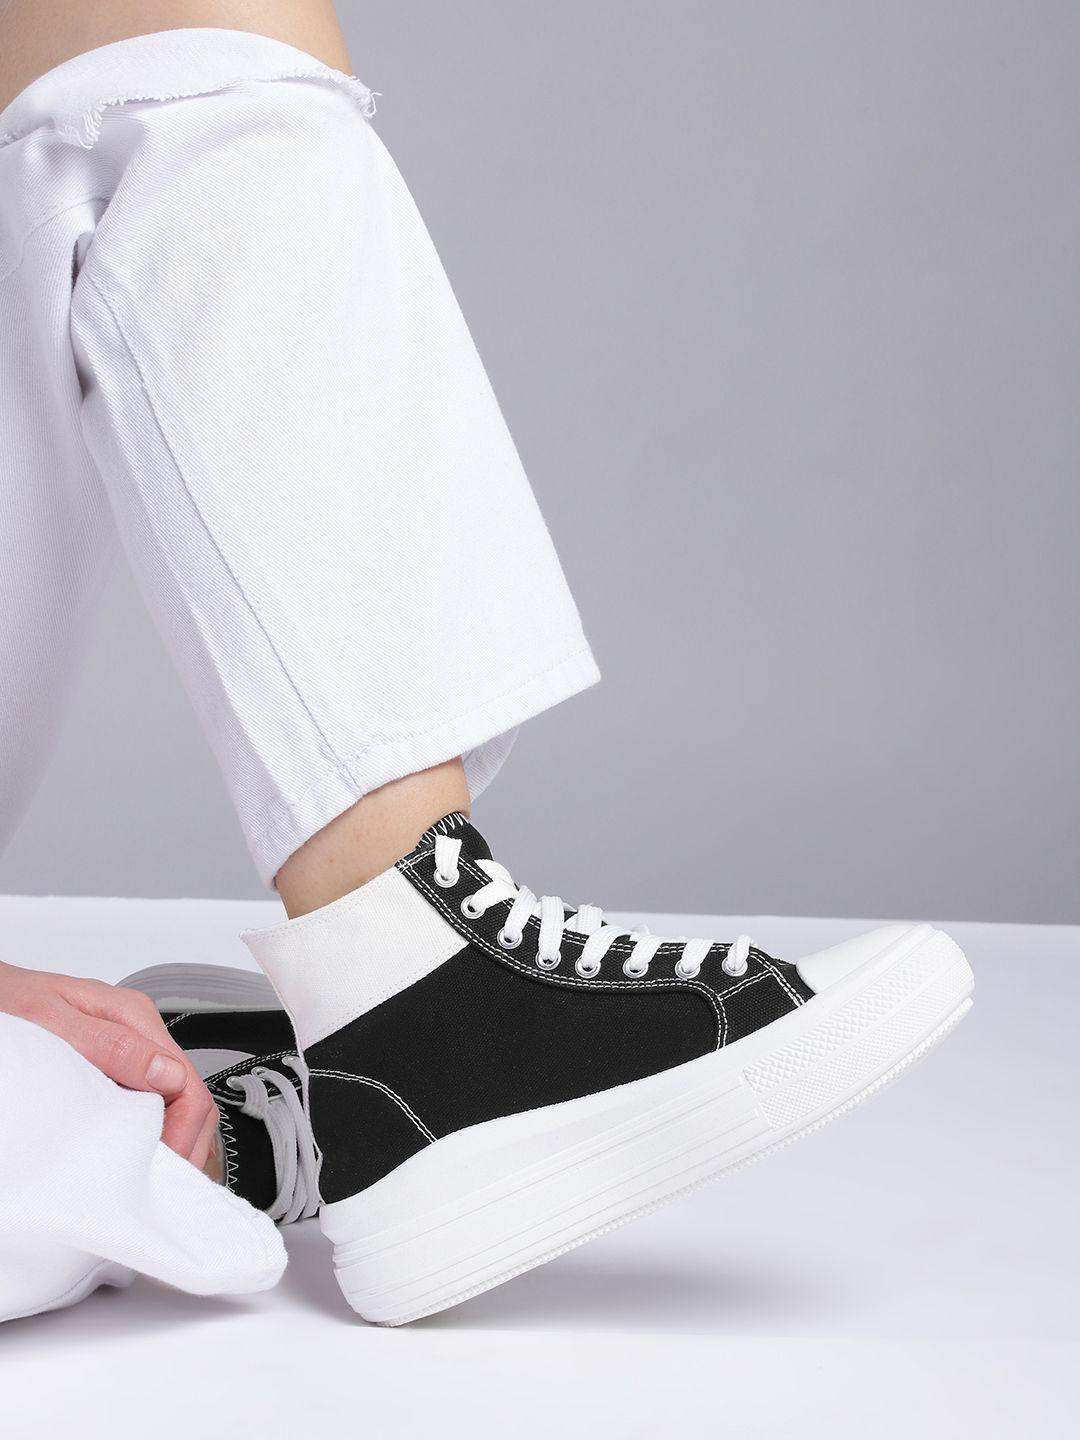 kook n keech women black & white mid-top colourblocked sneakers